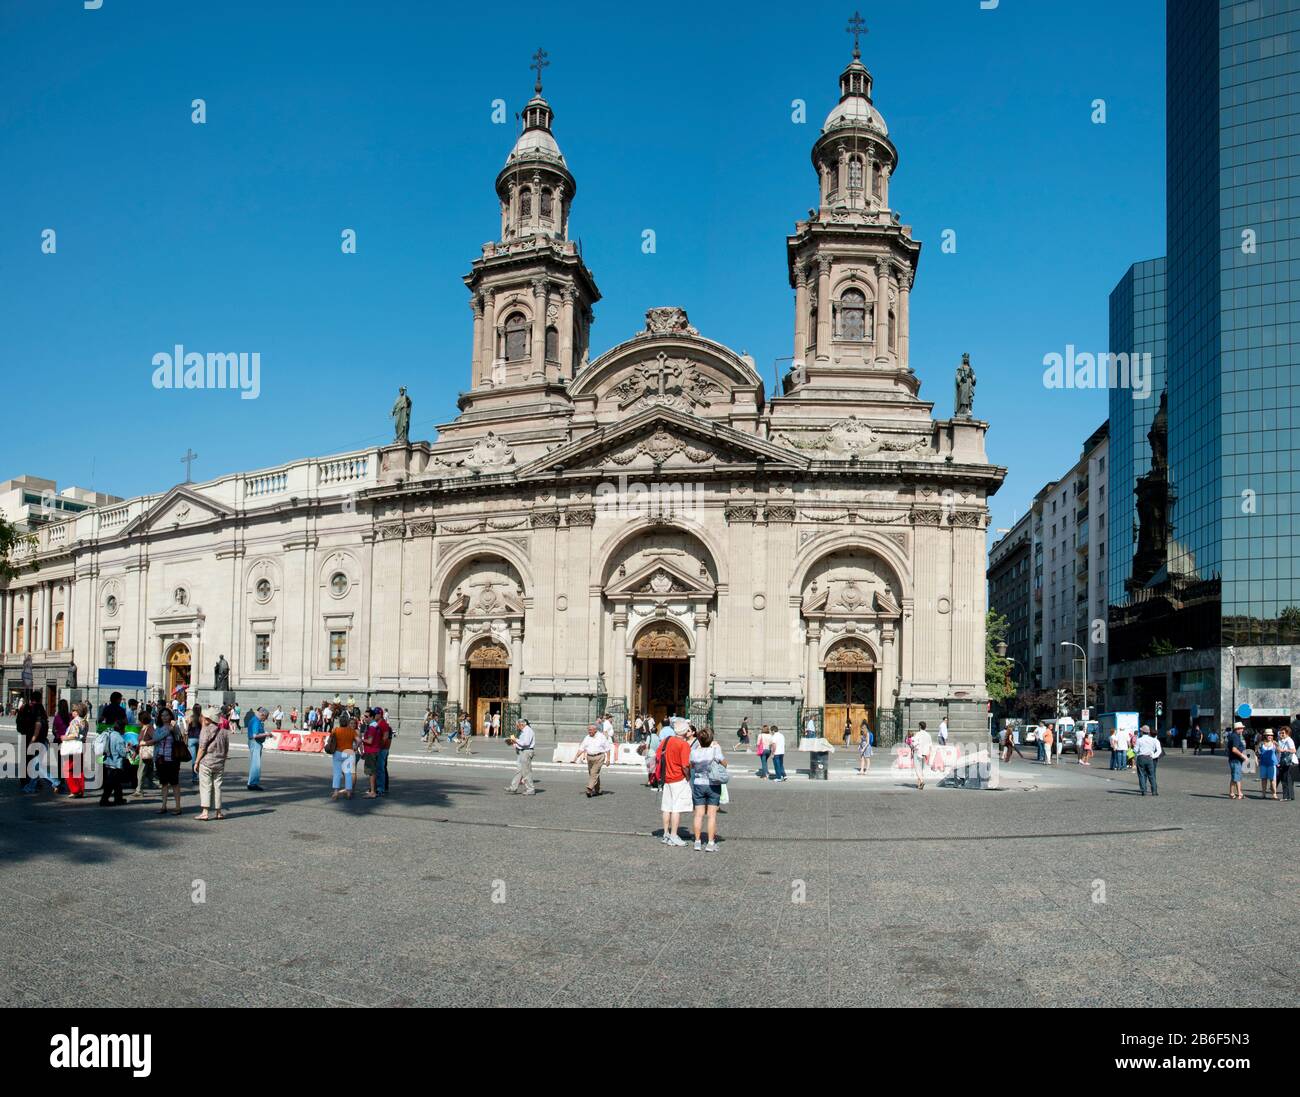 Facade of the Catedral Metropolitana, Plaza de Armas, Santiago, Chile Stock Photo